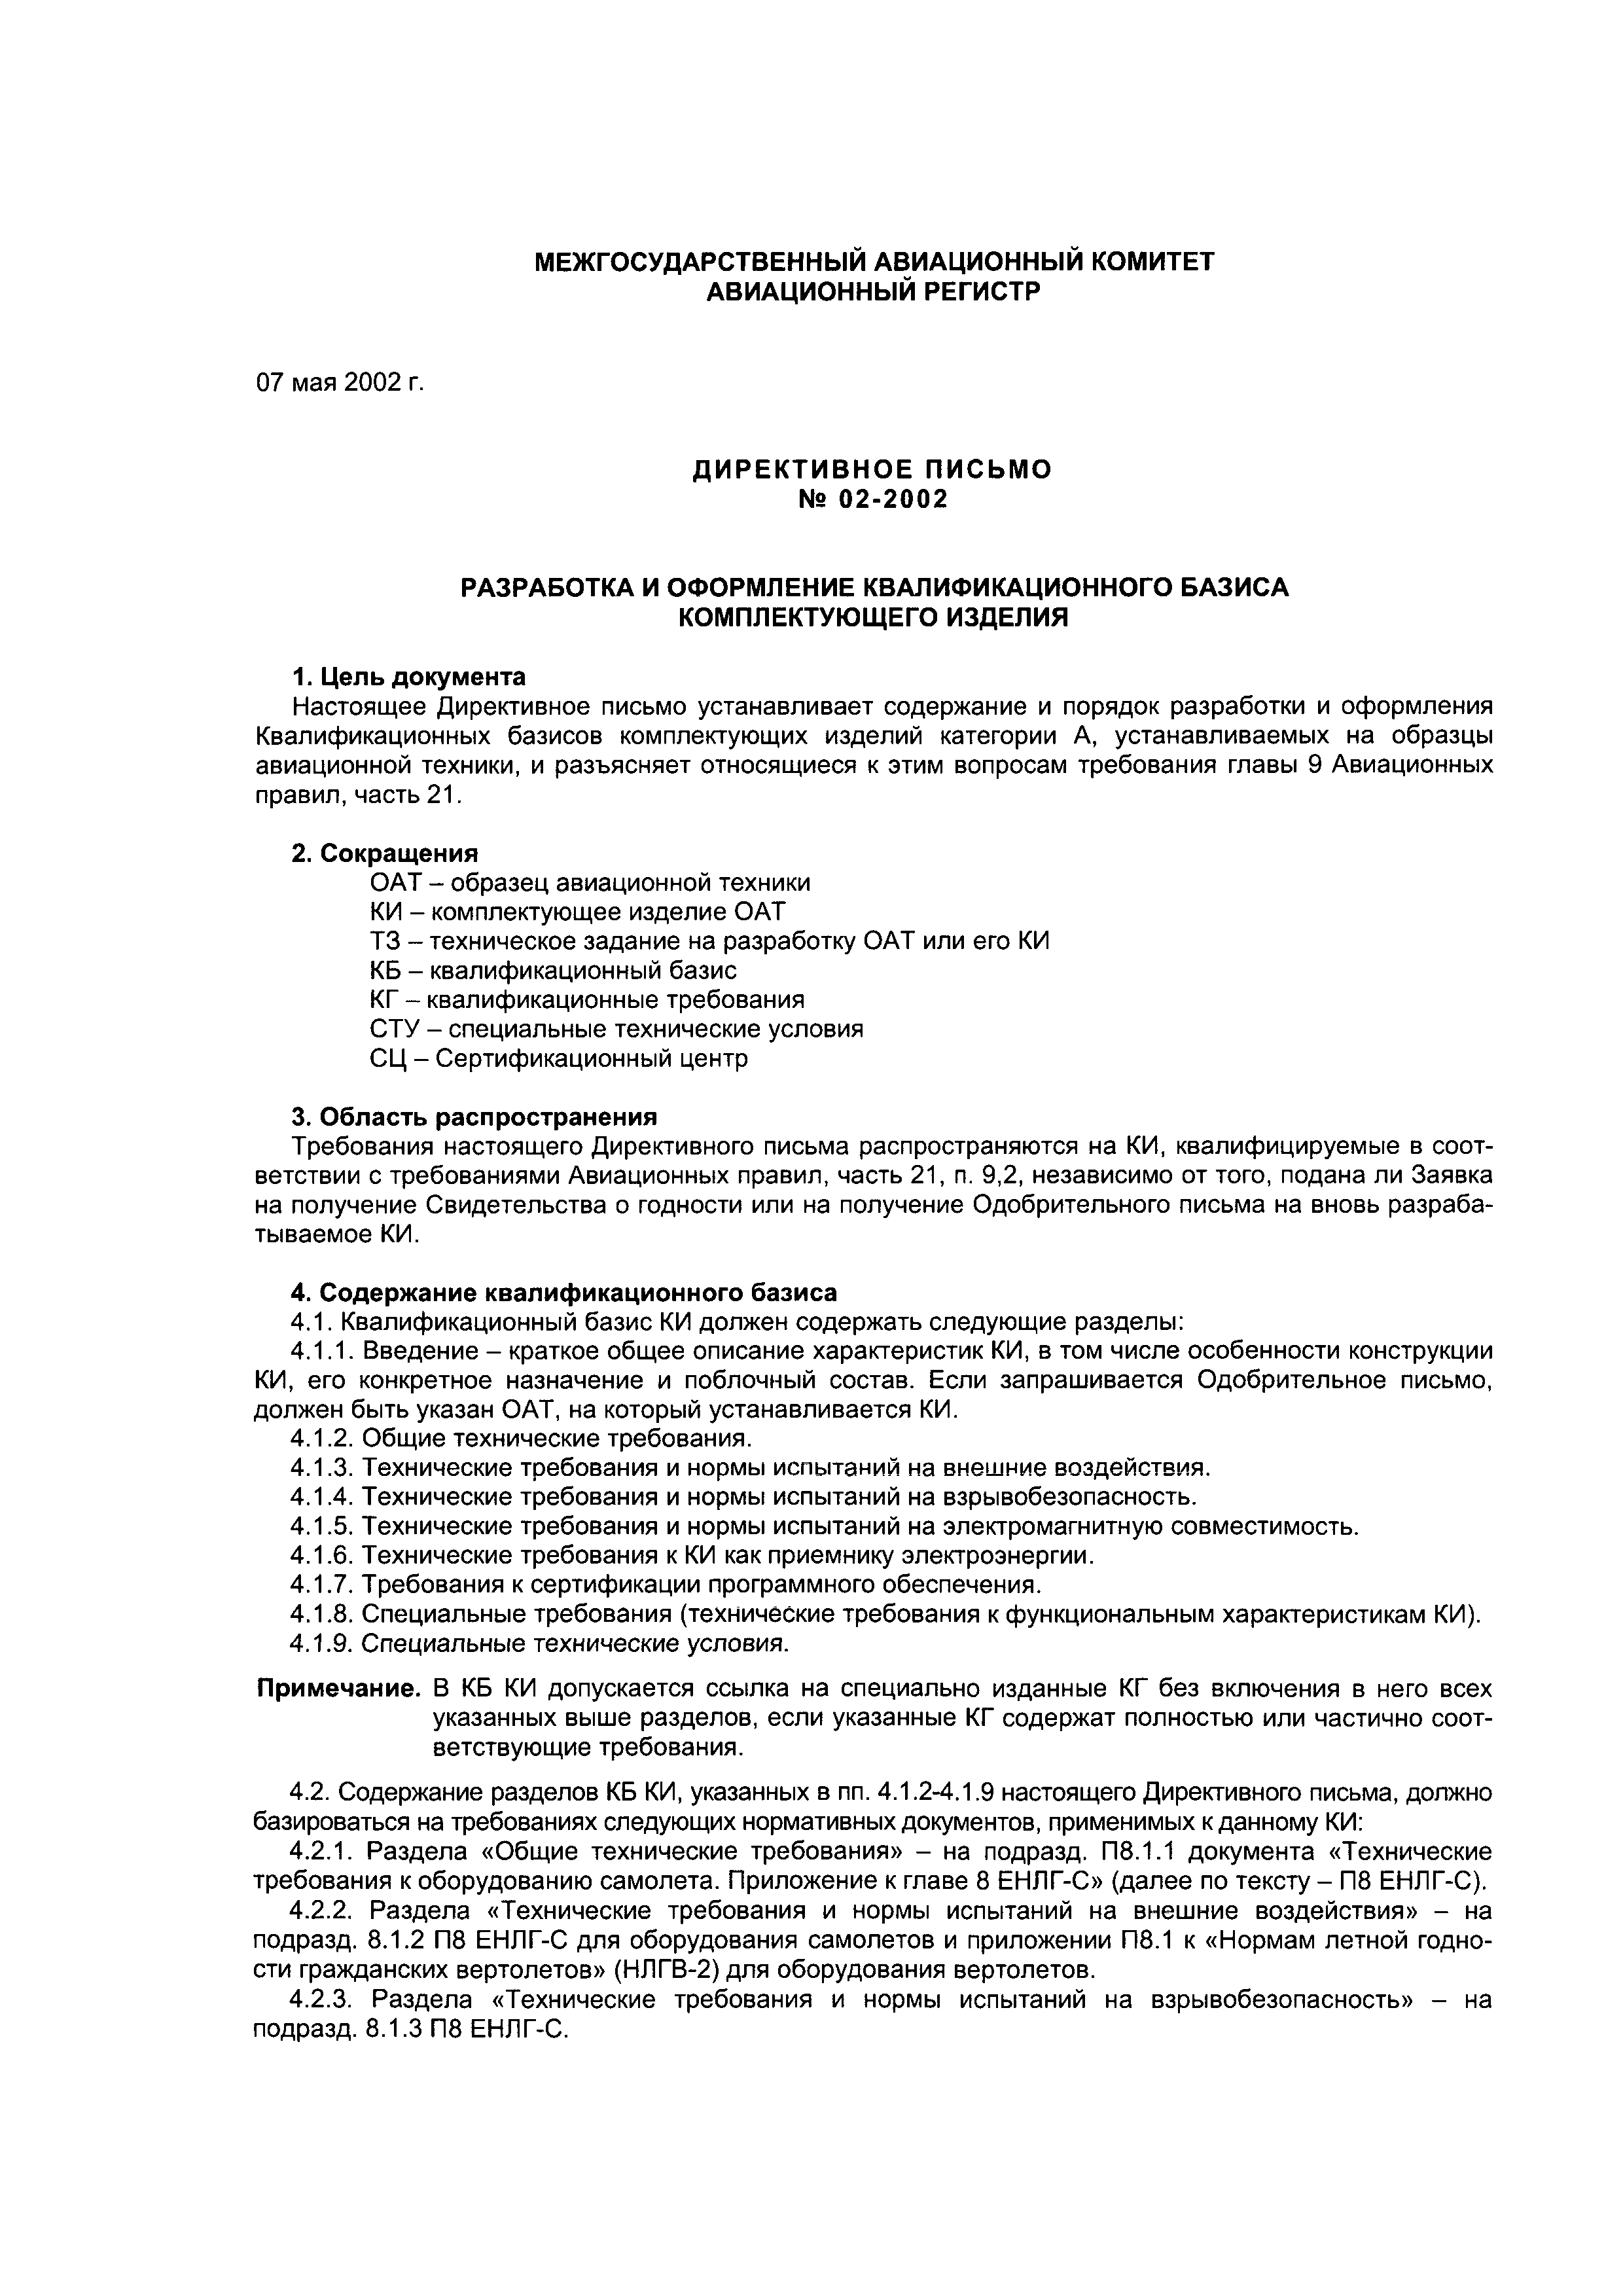 Директивное письмо 02-2002